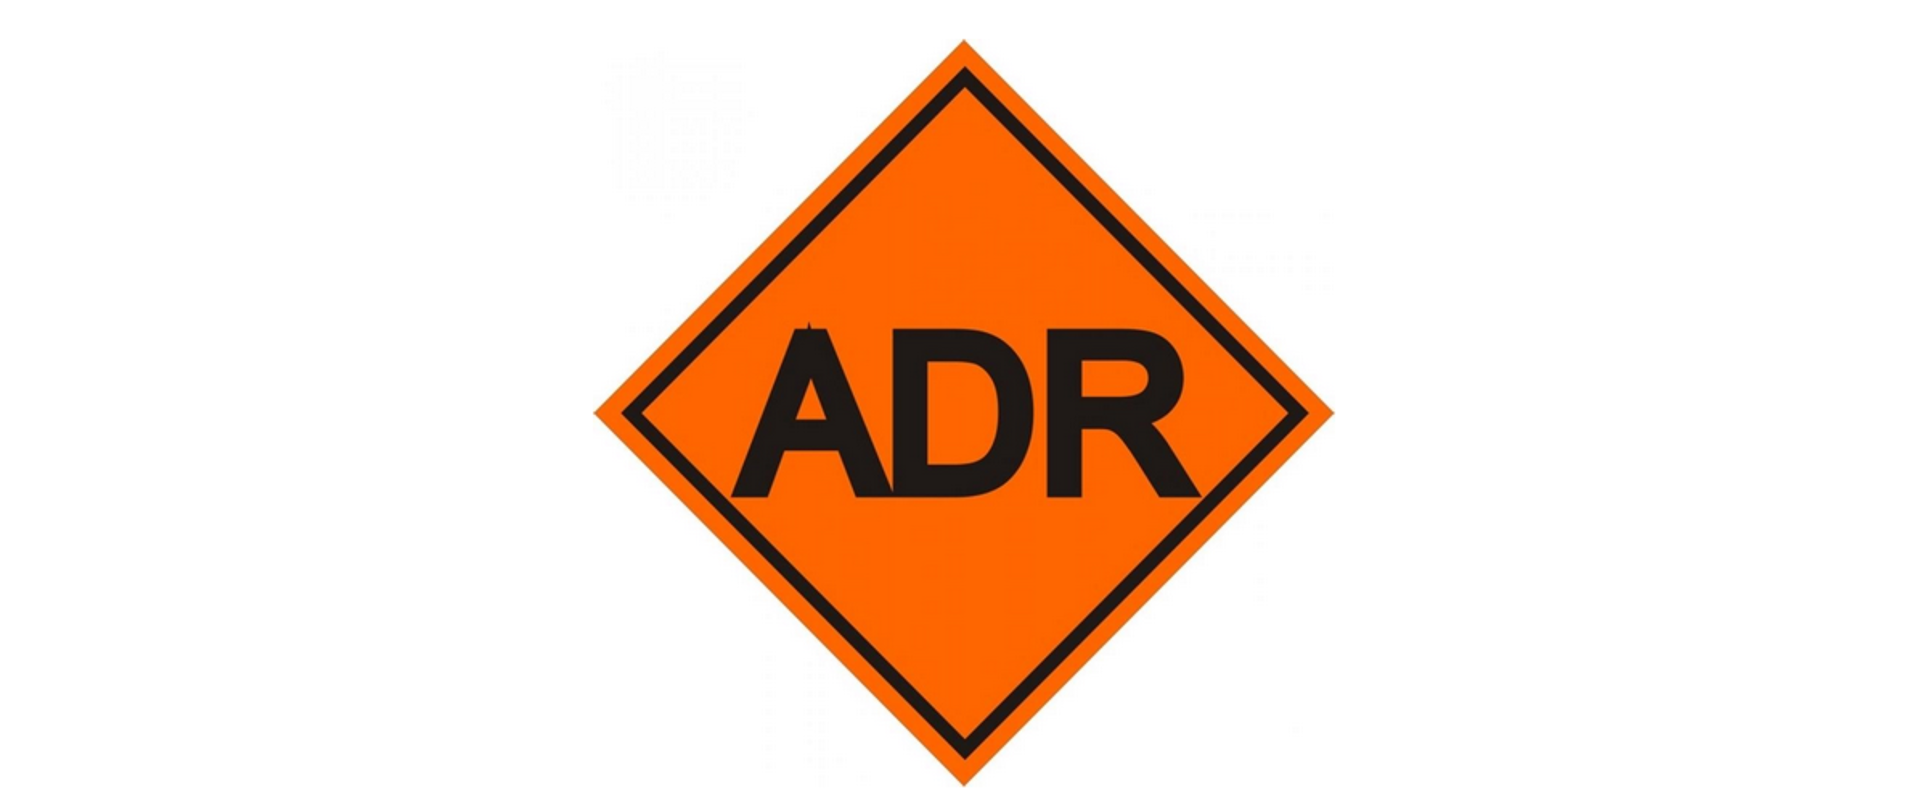 Ma białym tle logotyp materiałów niebezpiecznych ADR - pomarańczowy kwadrat z czarną obwódką i czarnym napisem ADR